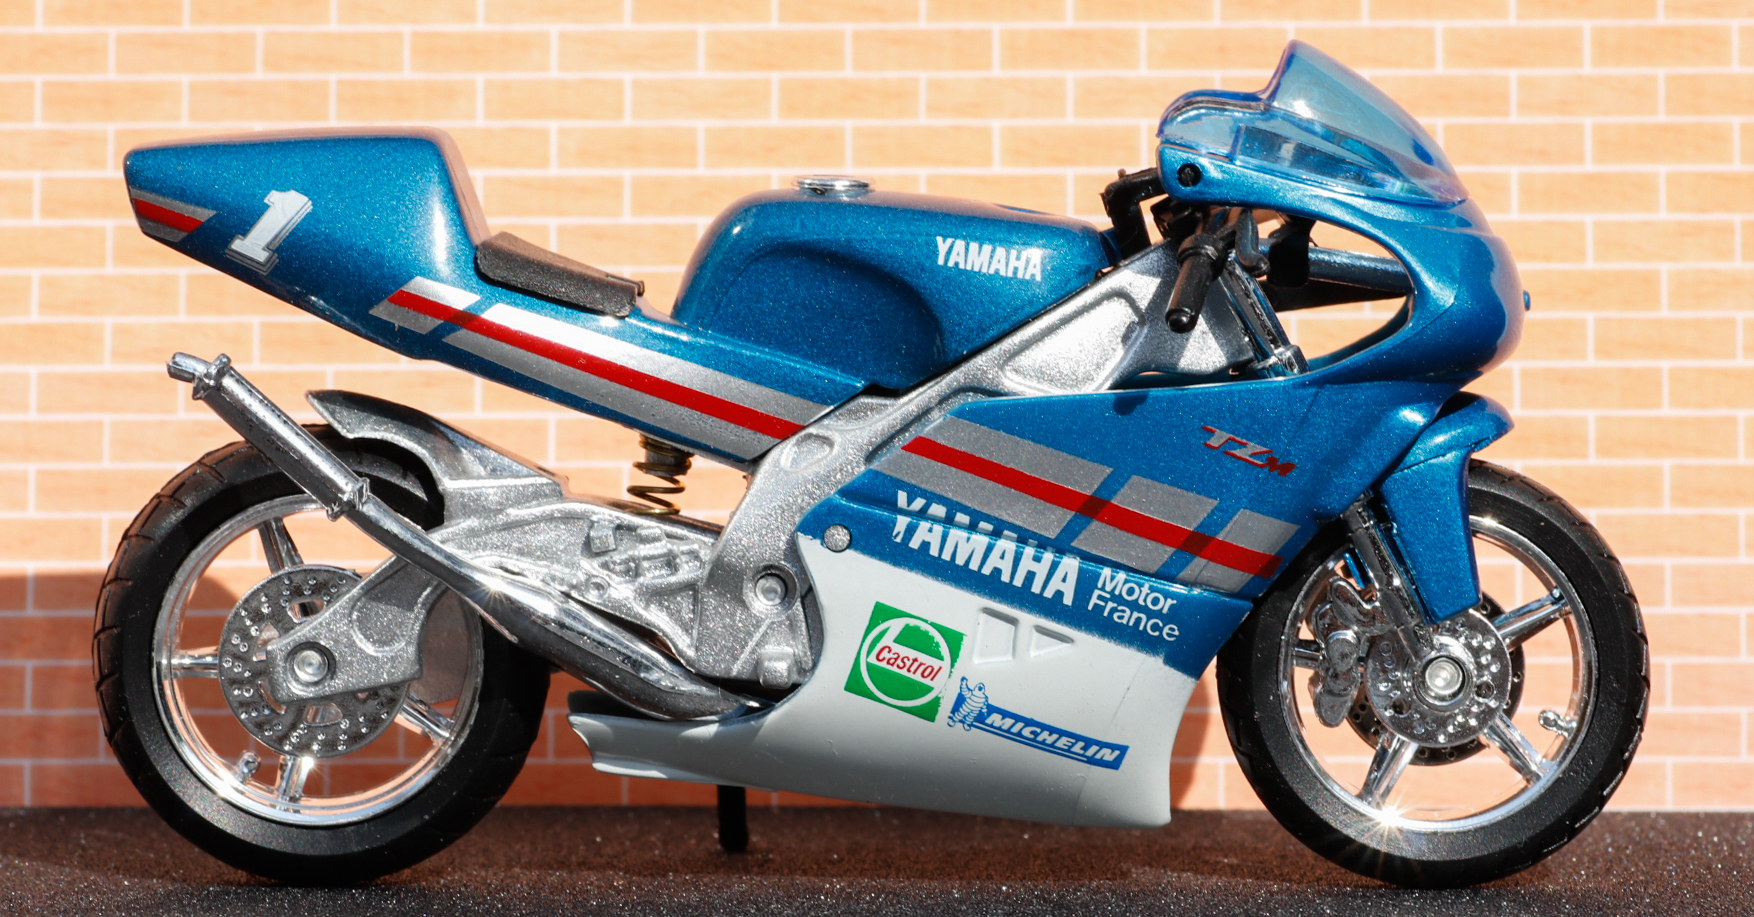 Yamaha TZ 250 M blau Baujahr 1994 Maßstab 1:18 Motorrad Modell von Welly 